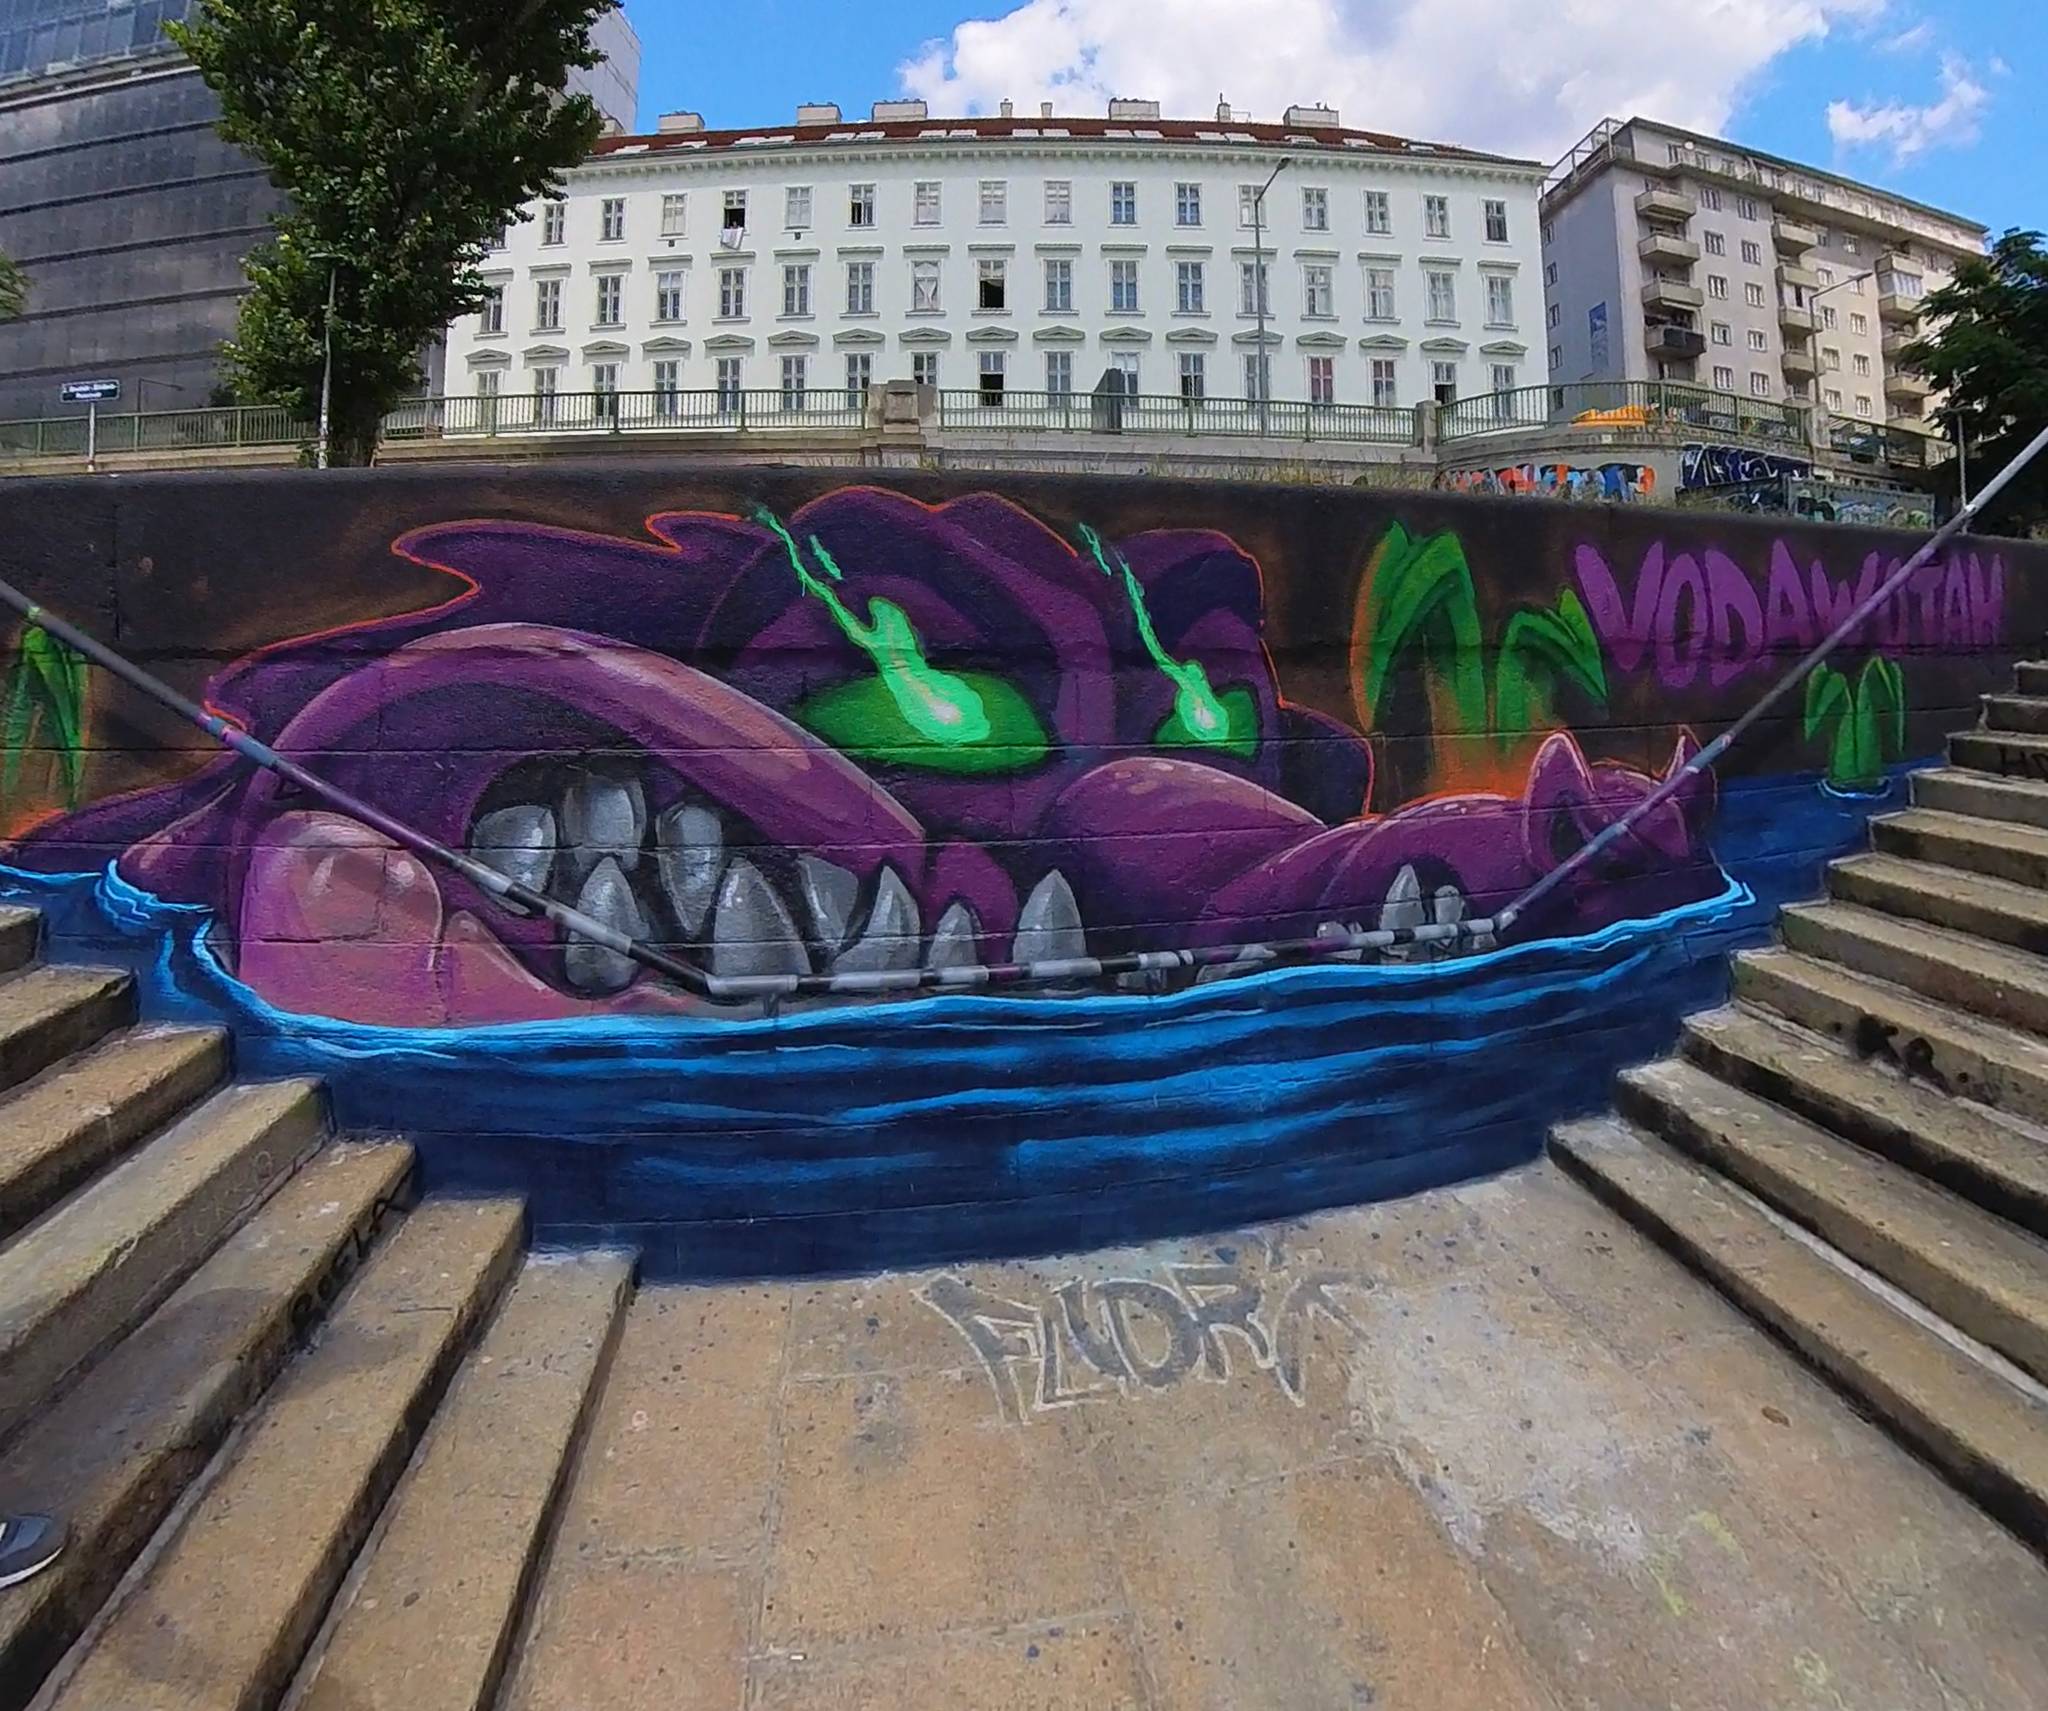 Vodawotah&mdash;Huge Crocodile Mural - Graffiti Character